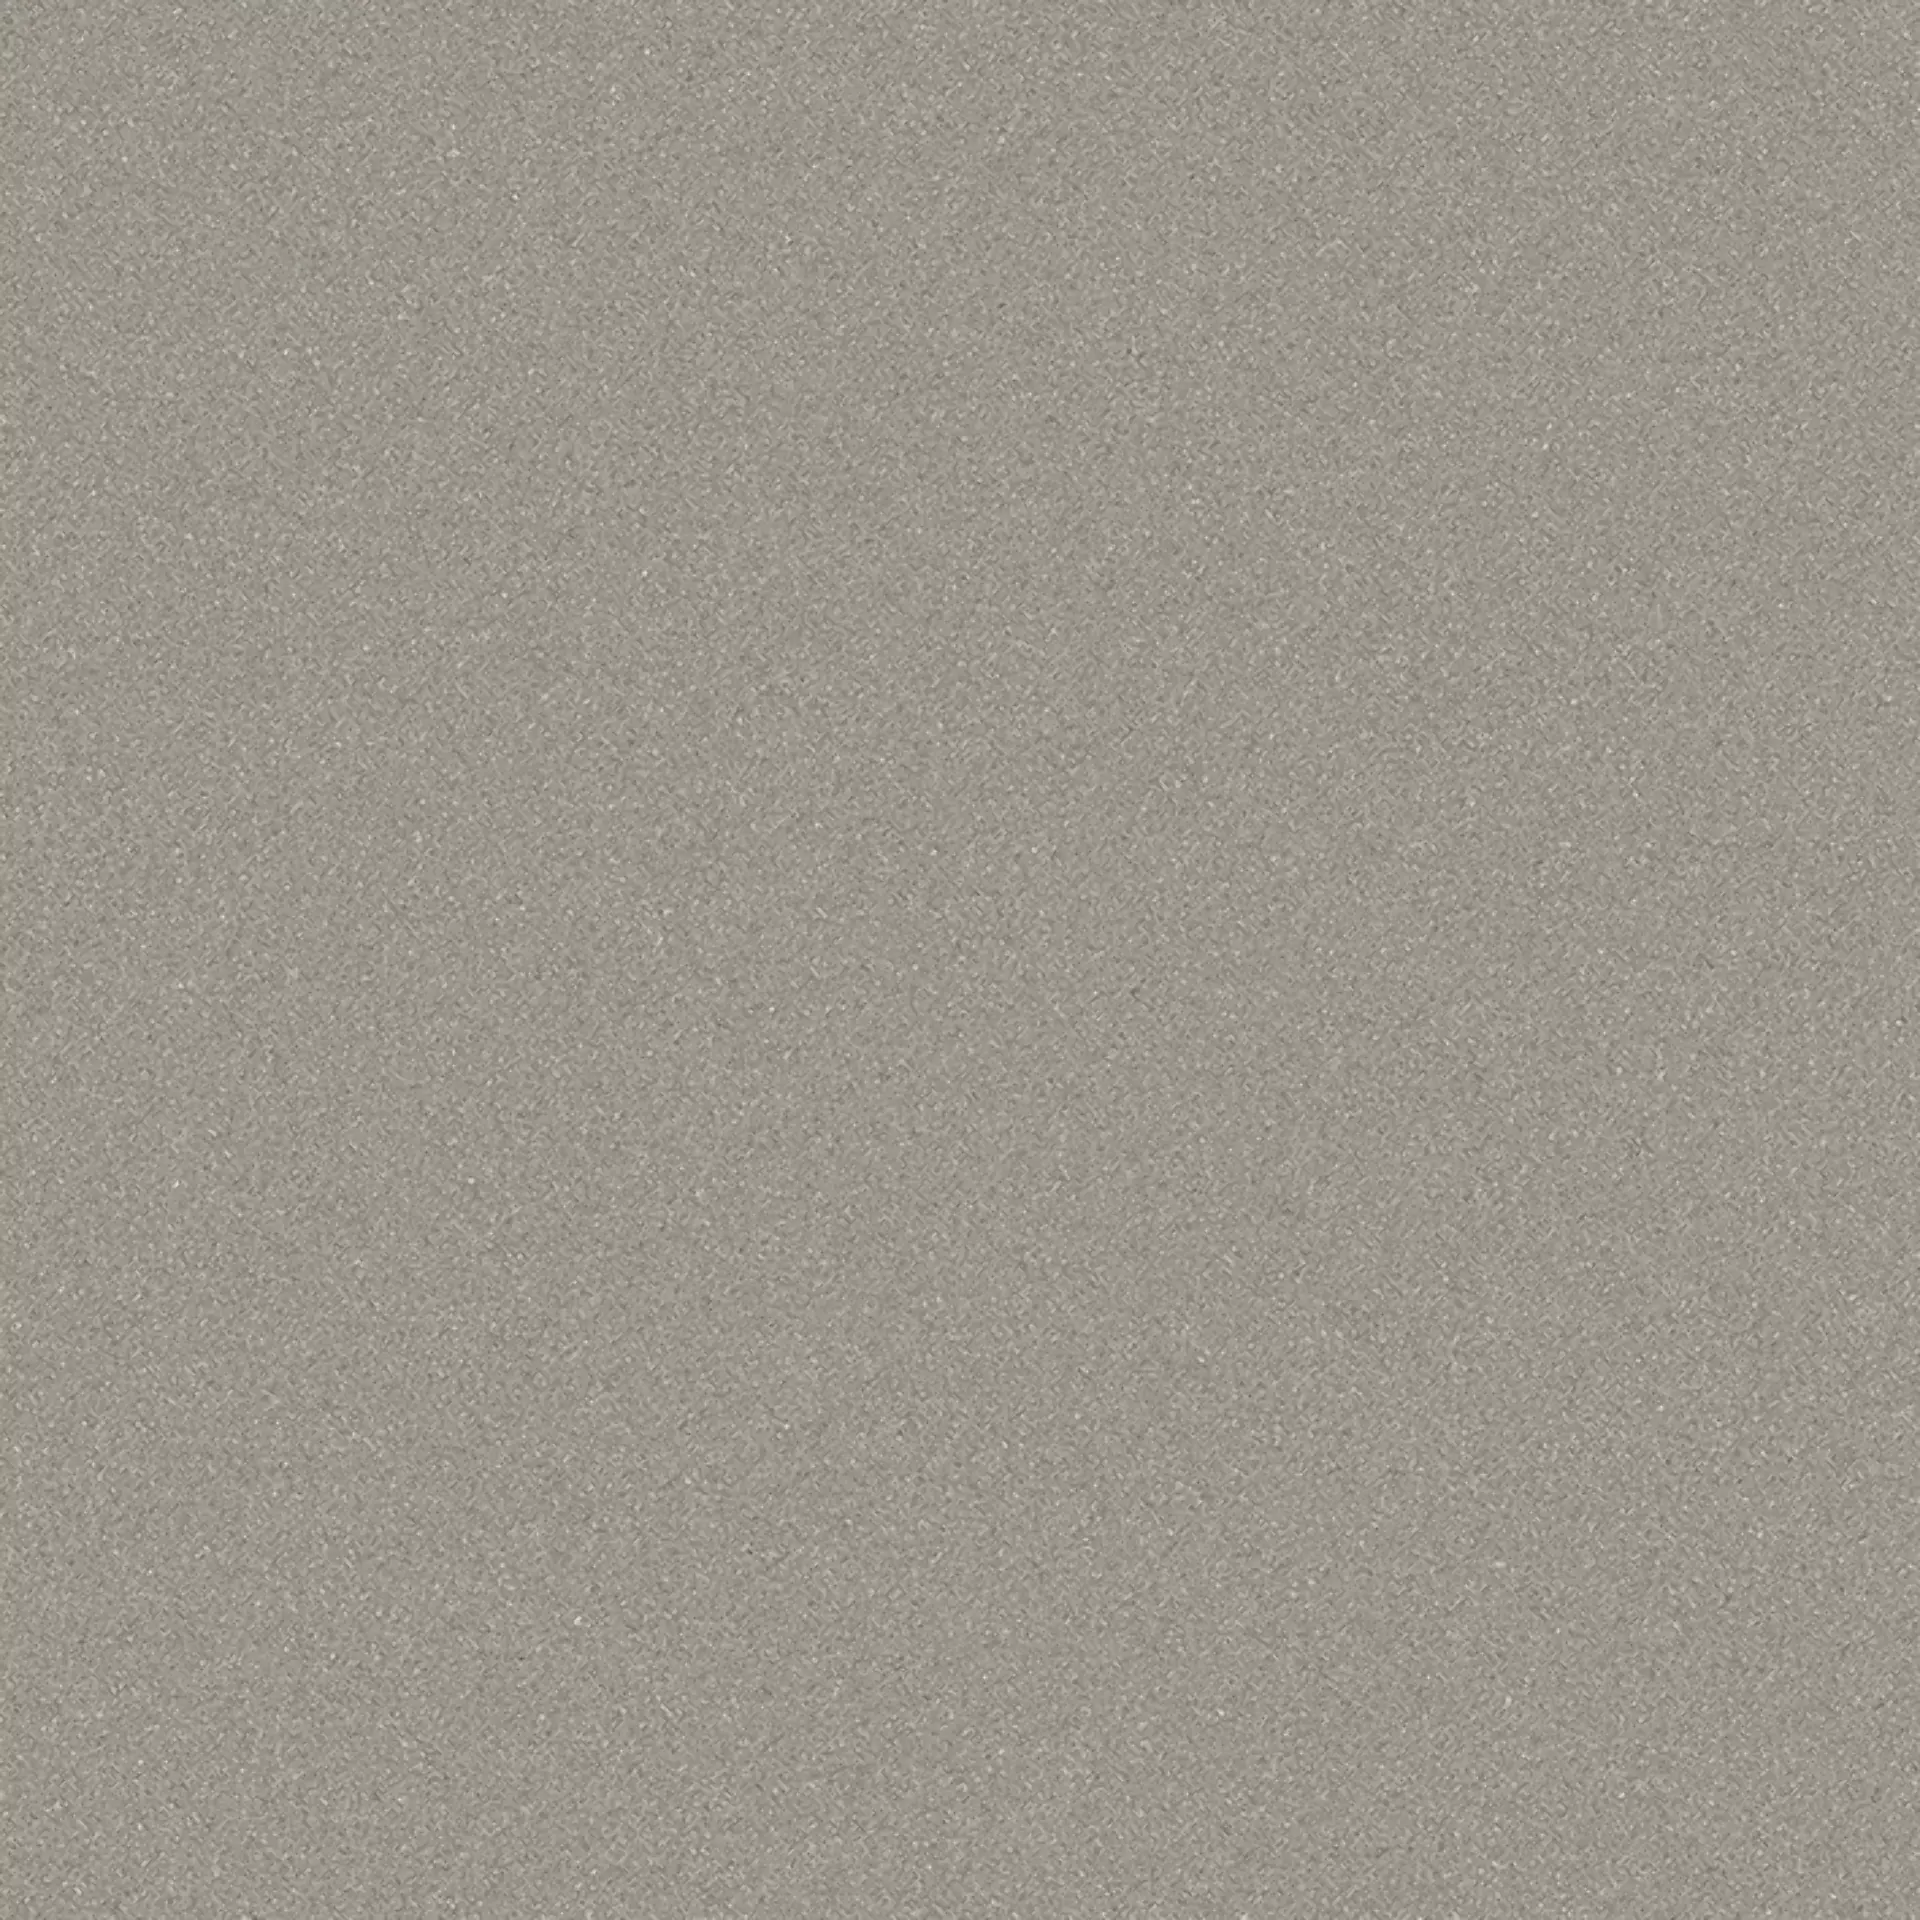 Wandfliese,Bodenfliese Villeroy & Boch Pure Line 2.0 Cement Grey Matt Cement Grey 2753-UL61 matt 60x60cm rektifiziert 12mm